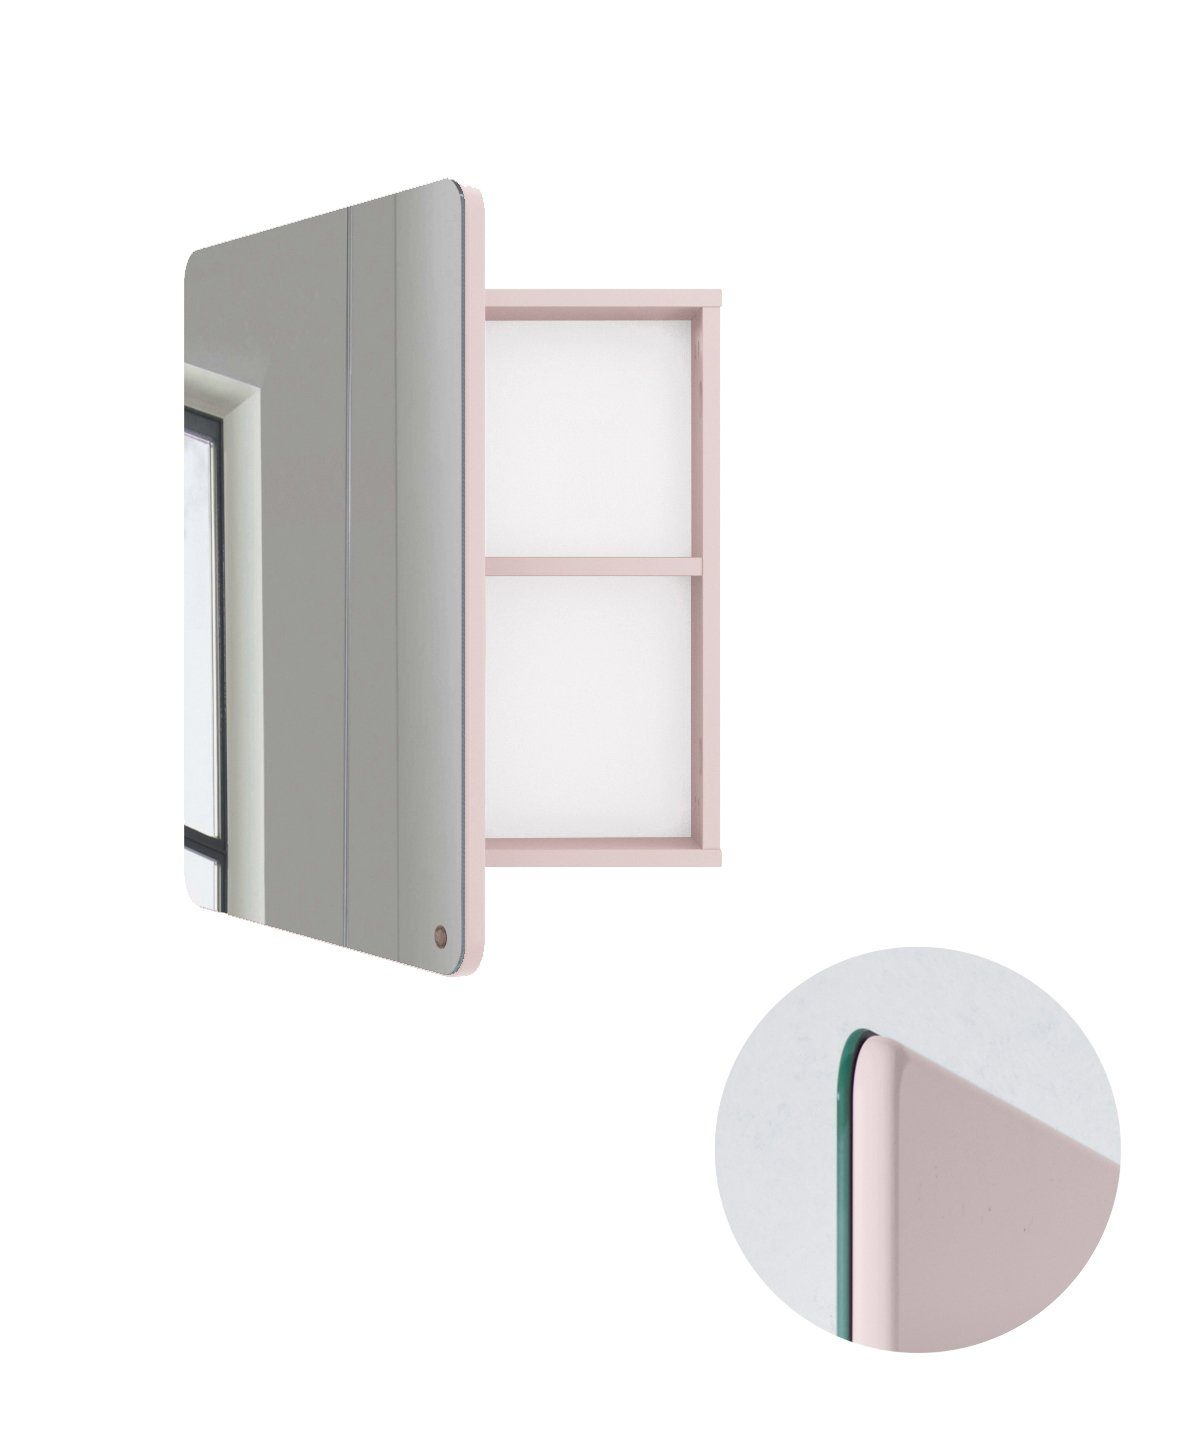 TOM TAILOR HOME Badspiegel COLOR BATH - Small Mirror mit Tür - in vielen Farben, mit Stauraum, Tür aus MDF mit gerundeten Ecken, seidenmatt lackiert rose006